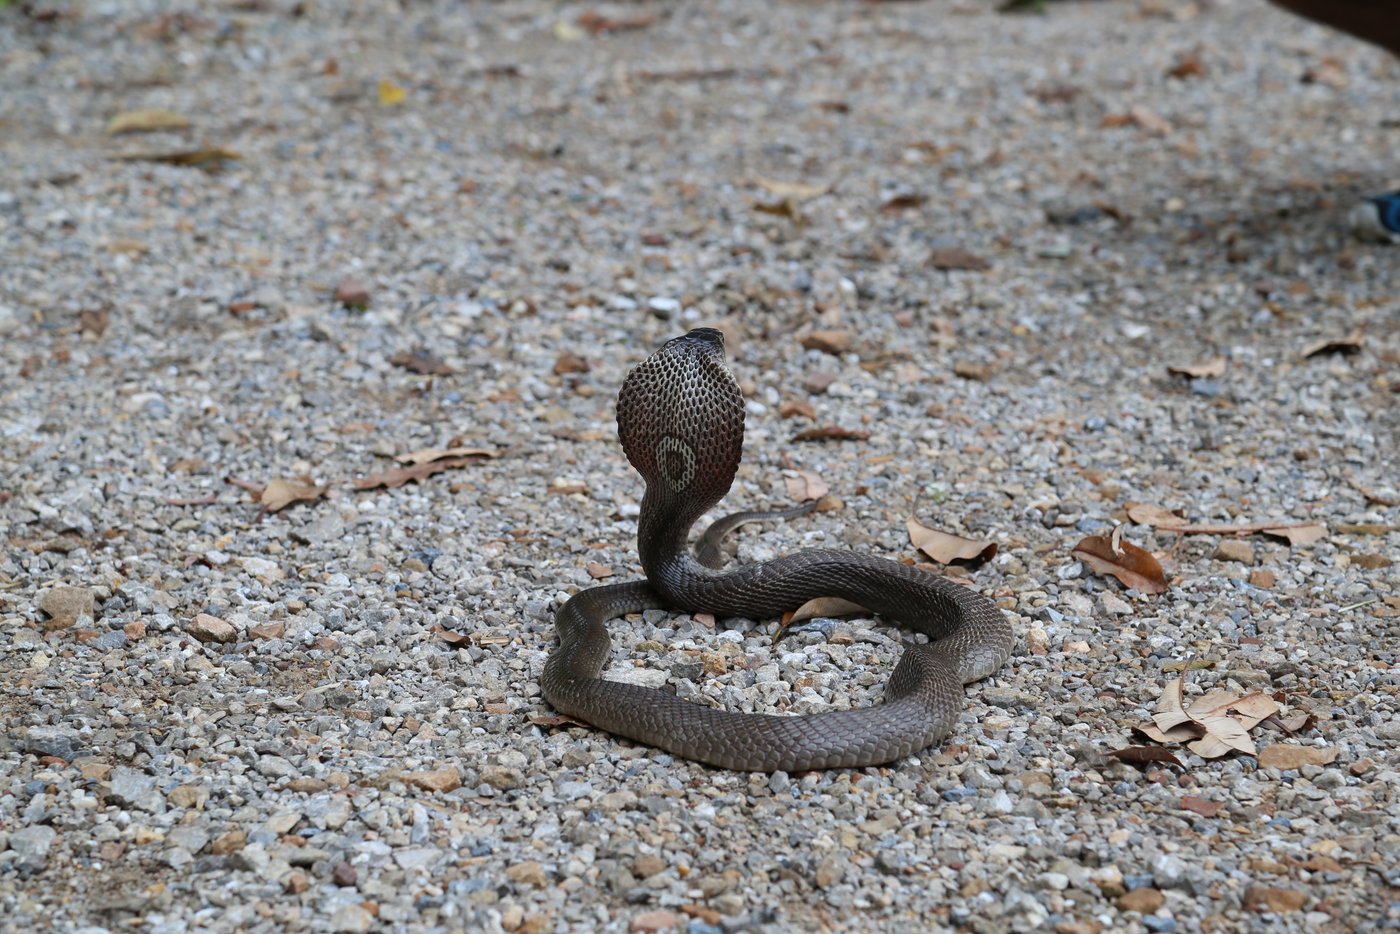 Das Bild zeigt eine dunkelgraue Monokelkobra von hinten, die ihren Kopf aufrichtet und ihre Kapuze mit dem typischen "O" auf der Kapuze zur Schau stellt. Die Schlange liegt auf grauem, steinigem Boden.